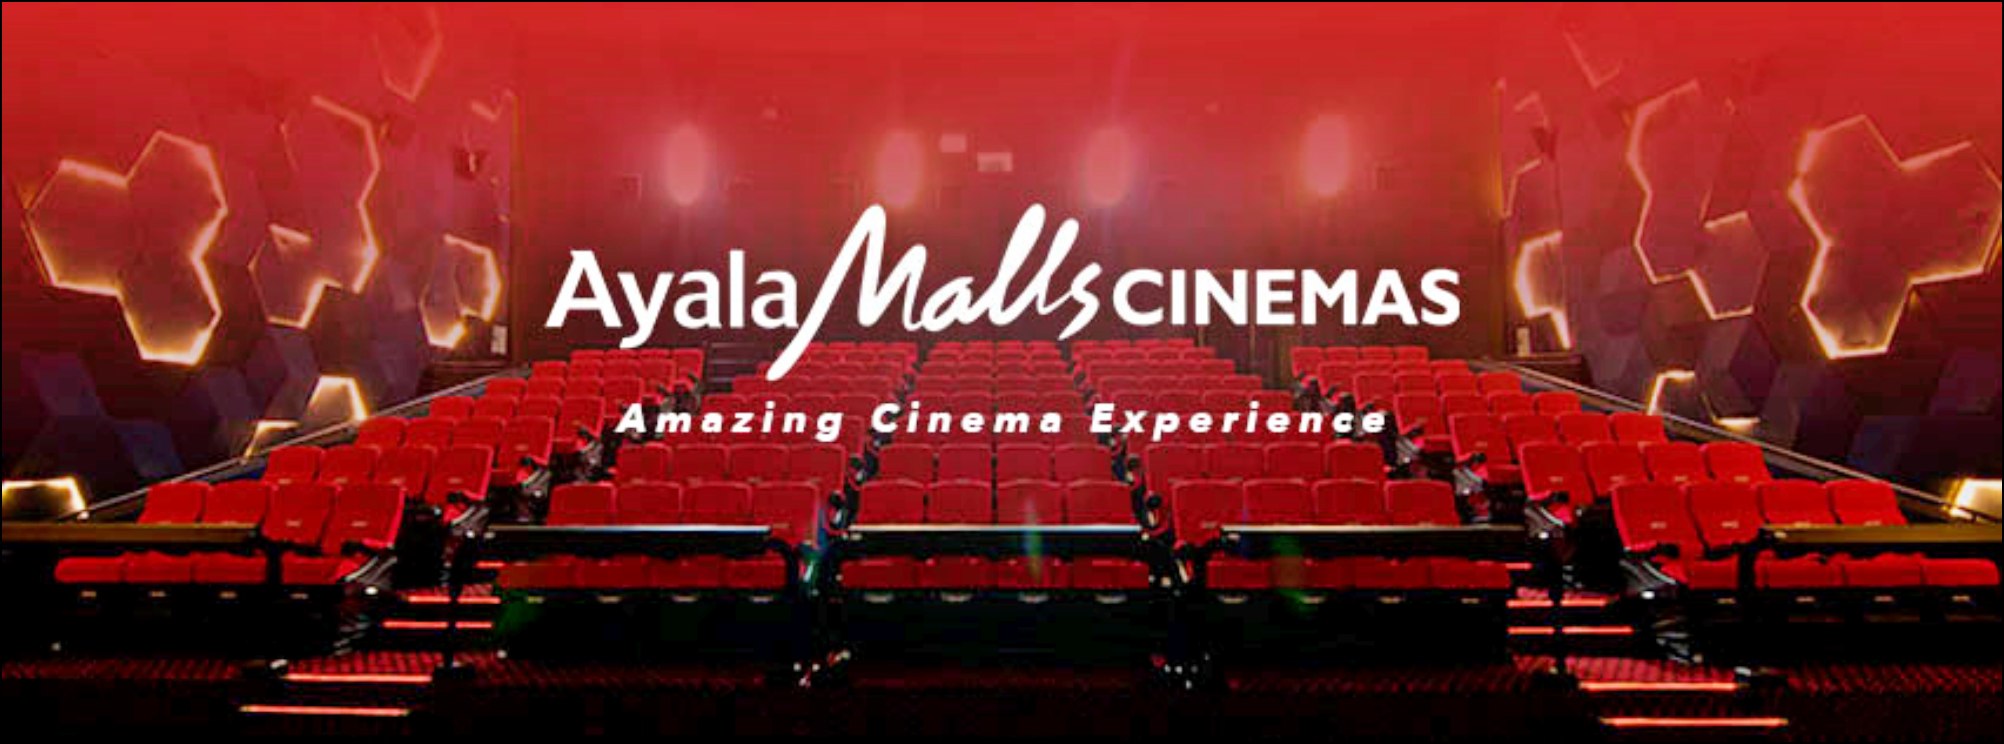 AYALA MALL CINEMA